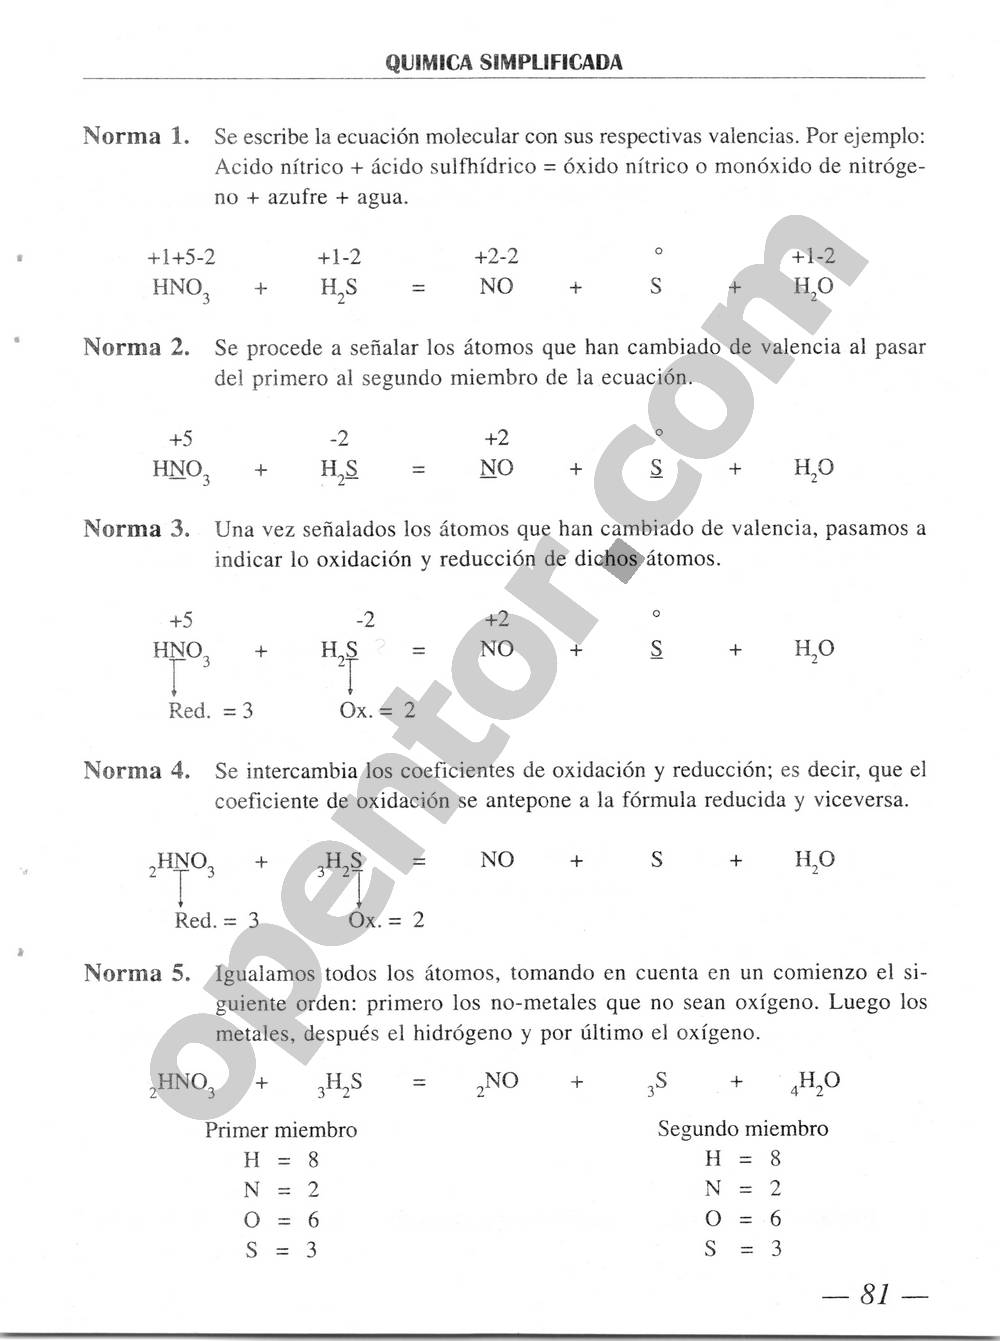 Química Simplificada de Diómedes Solano - Página 81